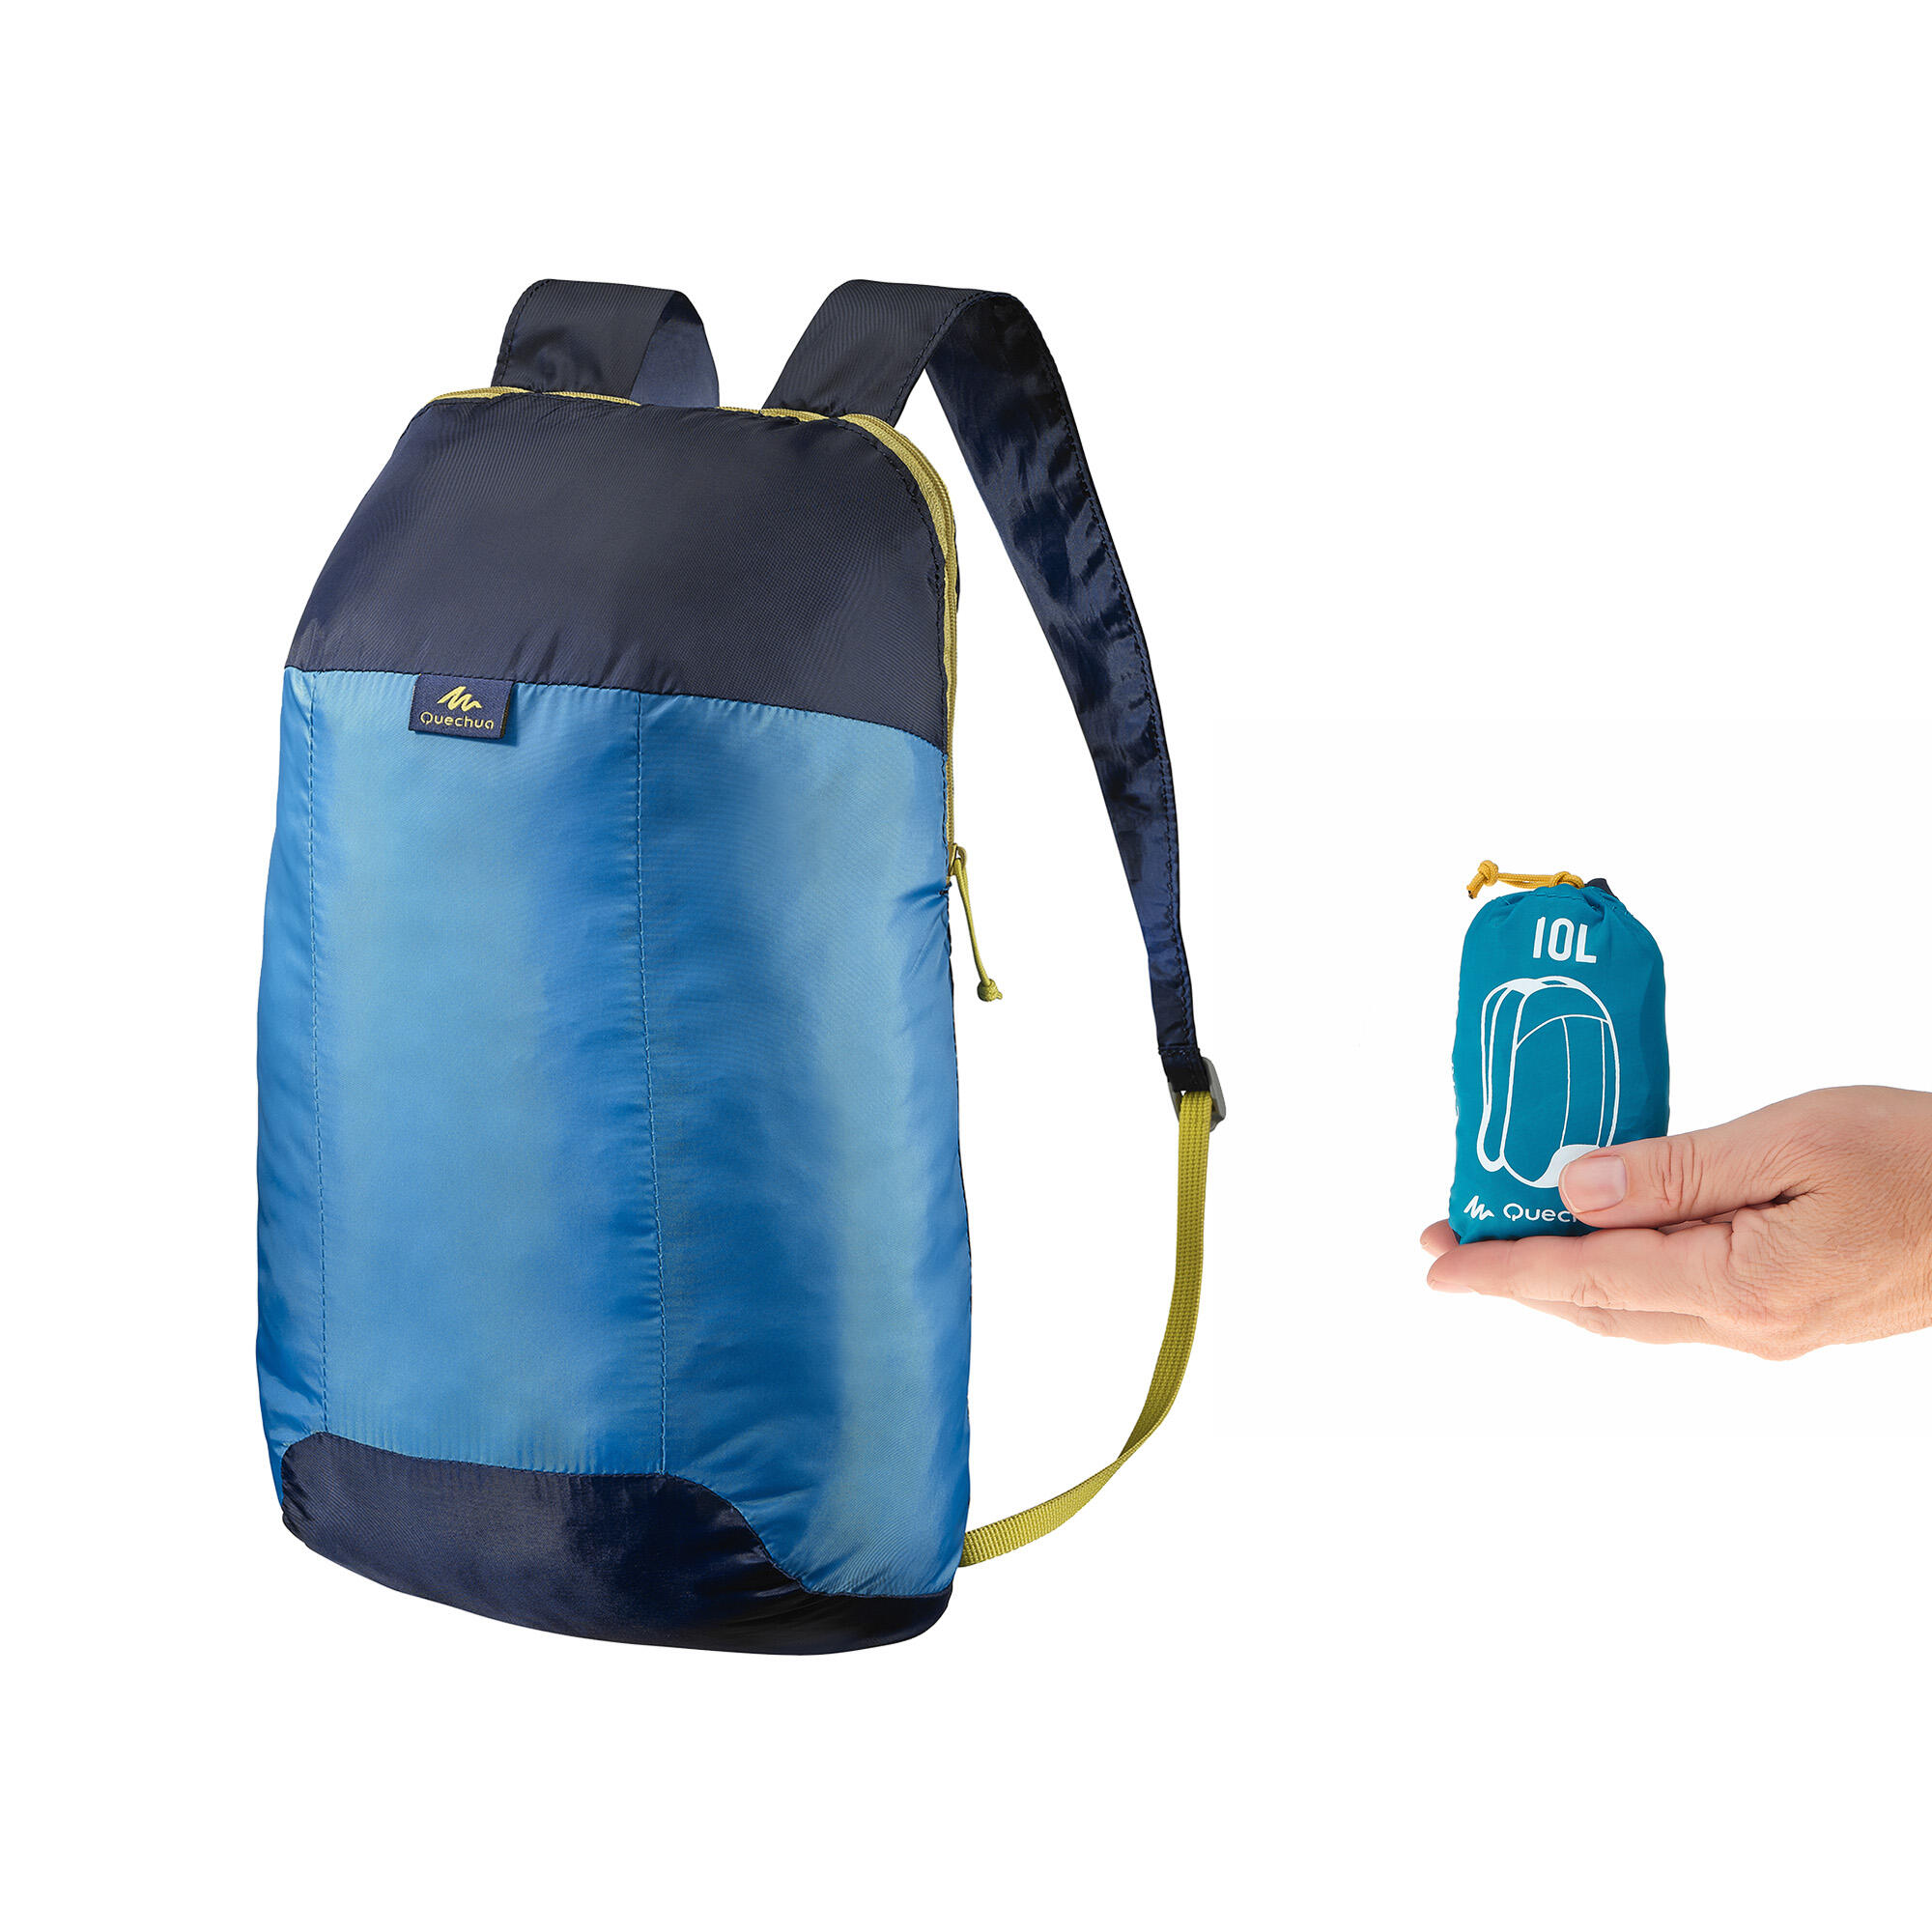 Arpenaz 10 Foldable Bag Blue|Shop 